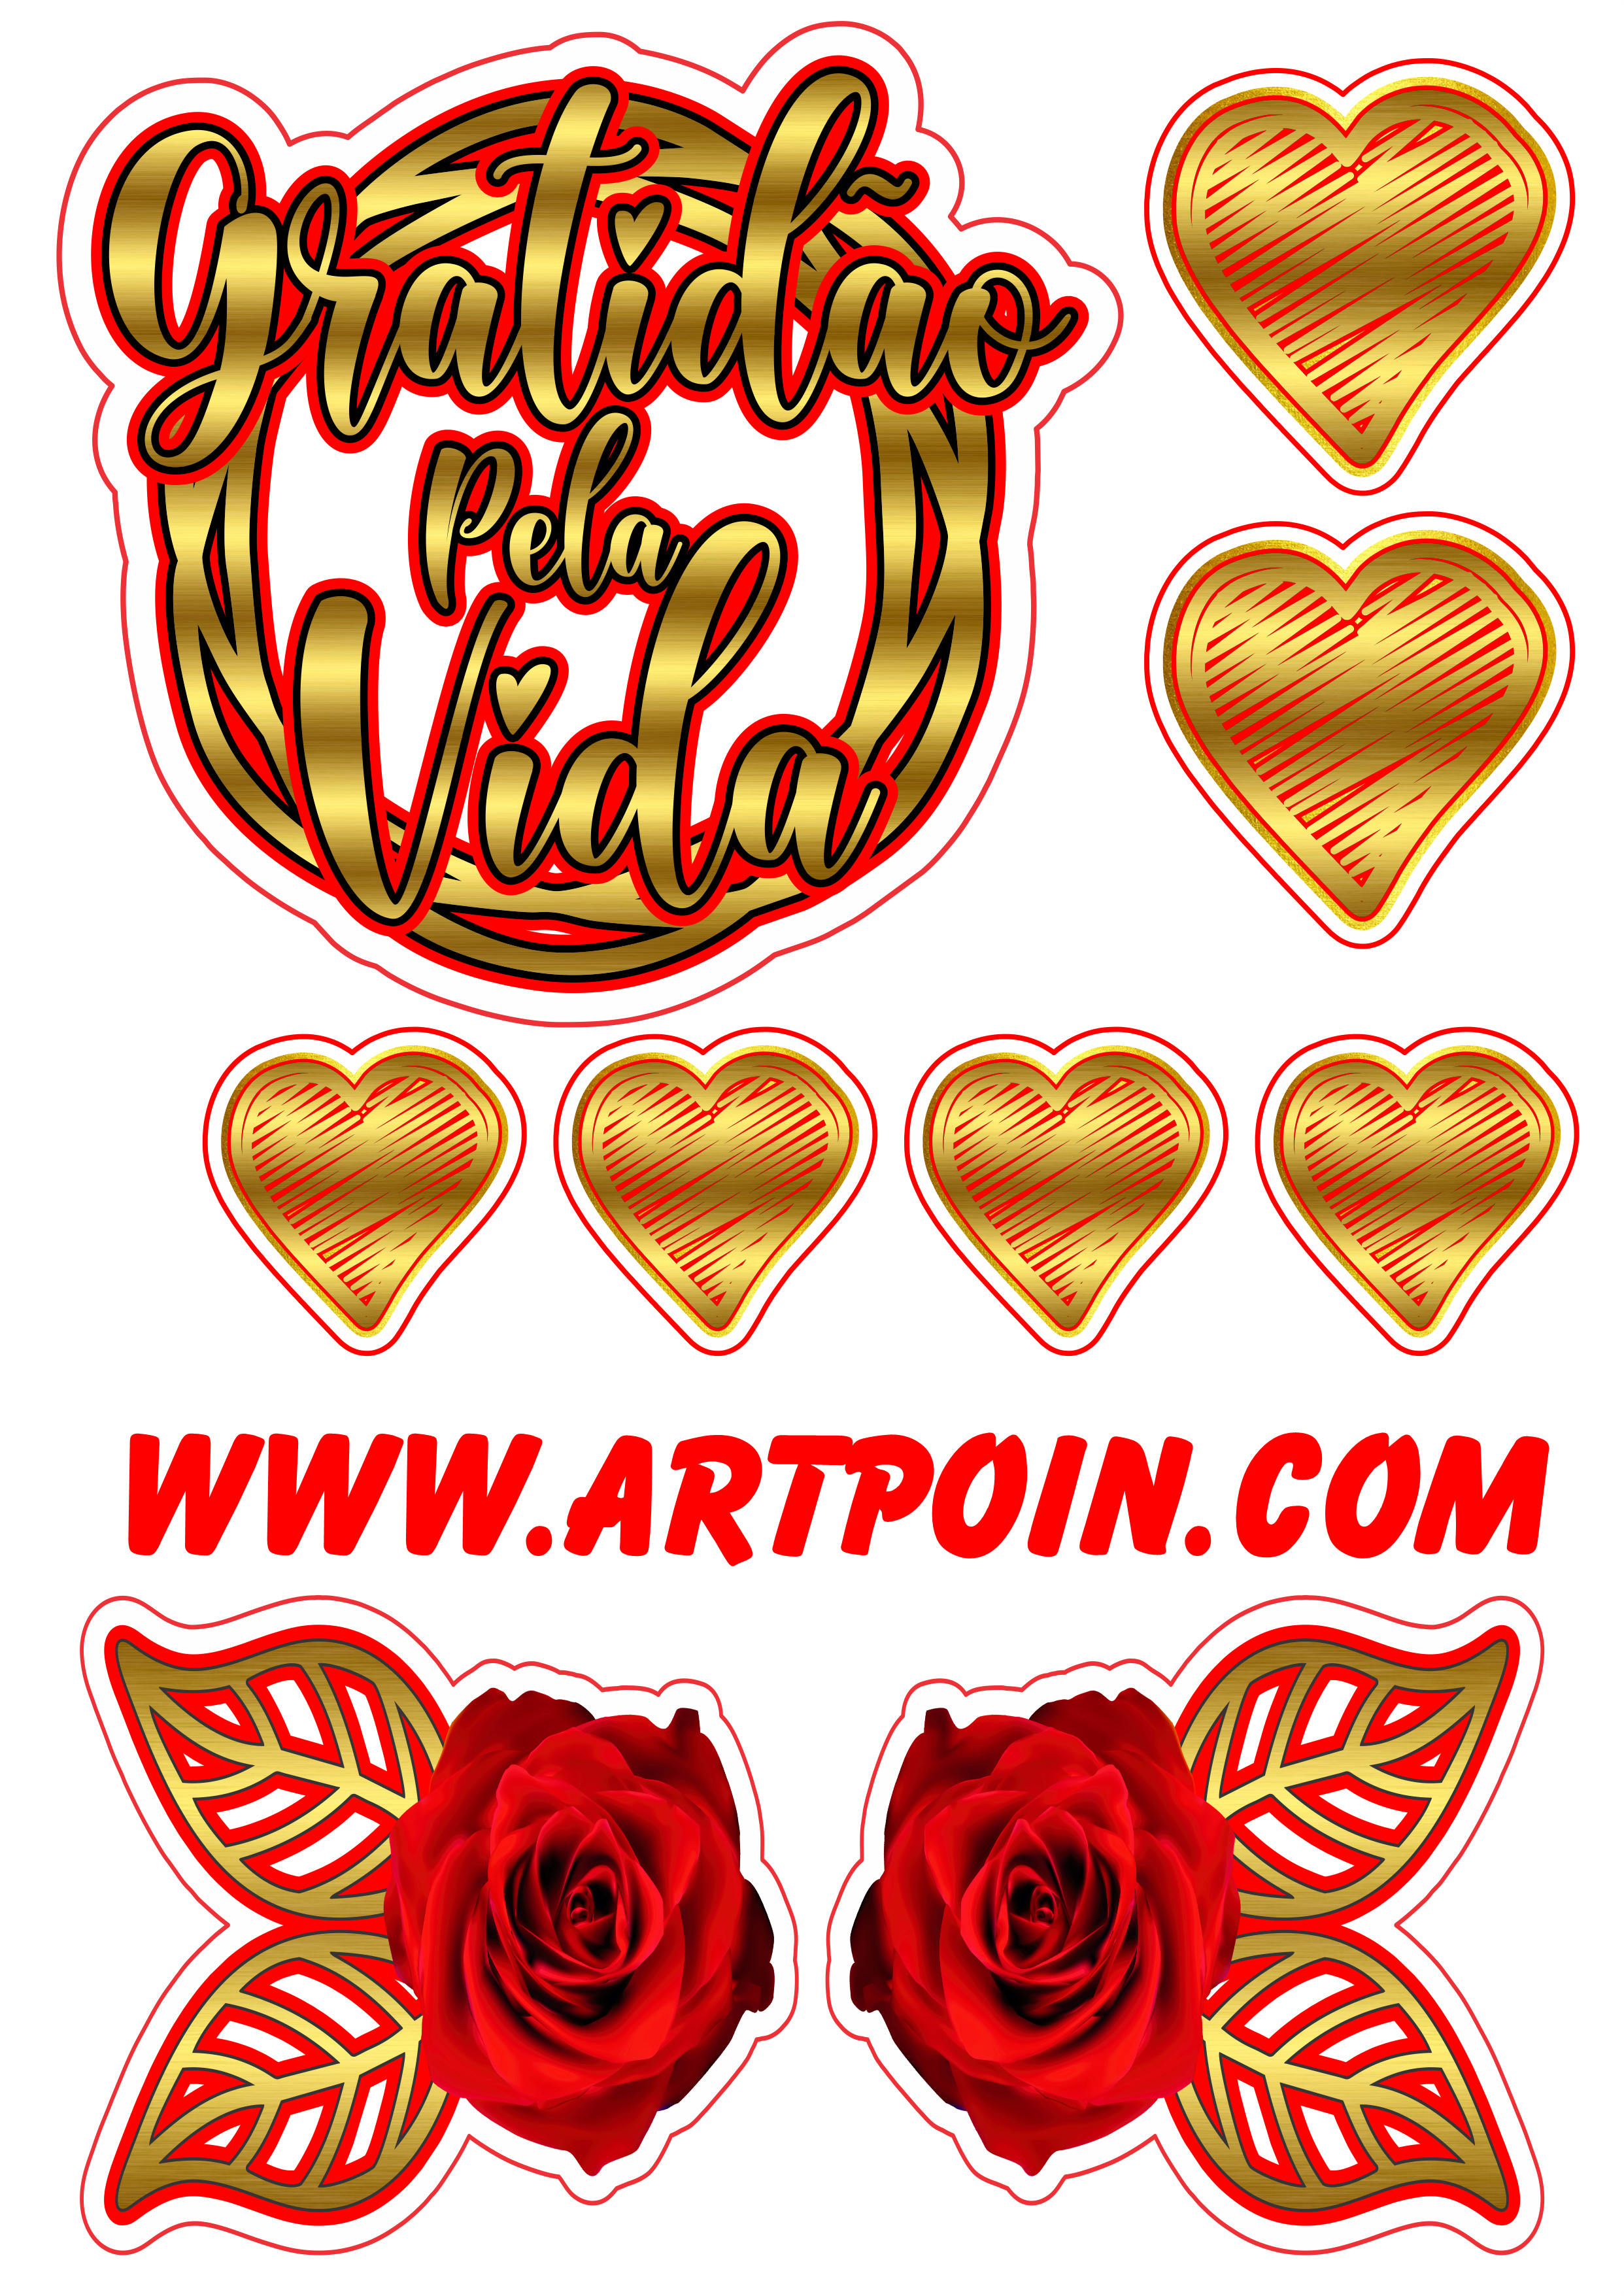 Topo de bolo dourado gratidão pela vida com flores e corações free download png